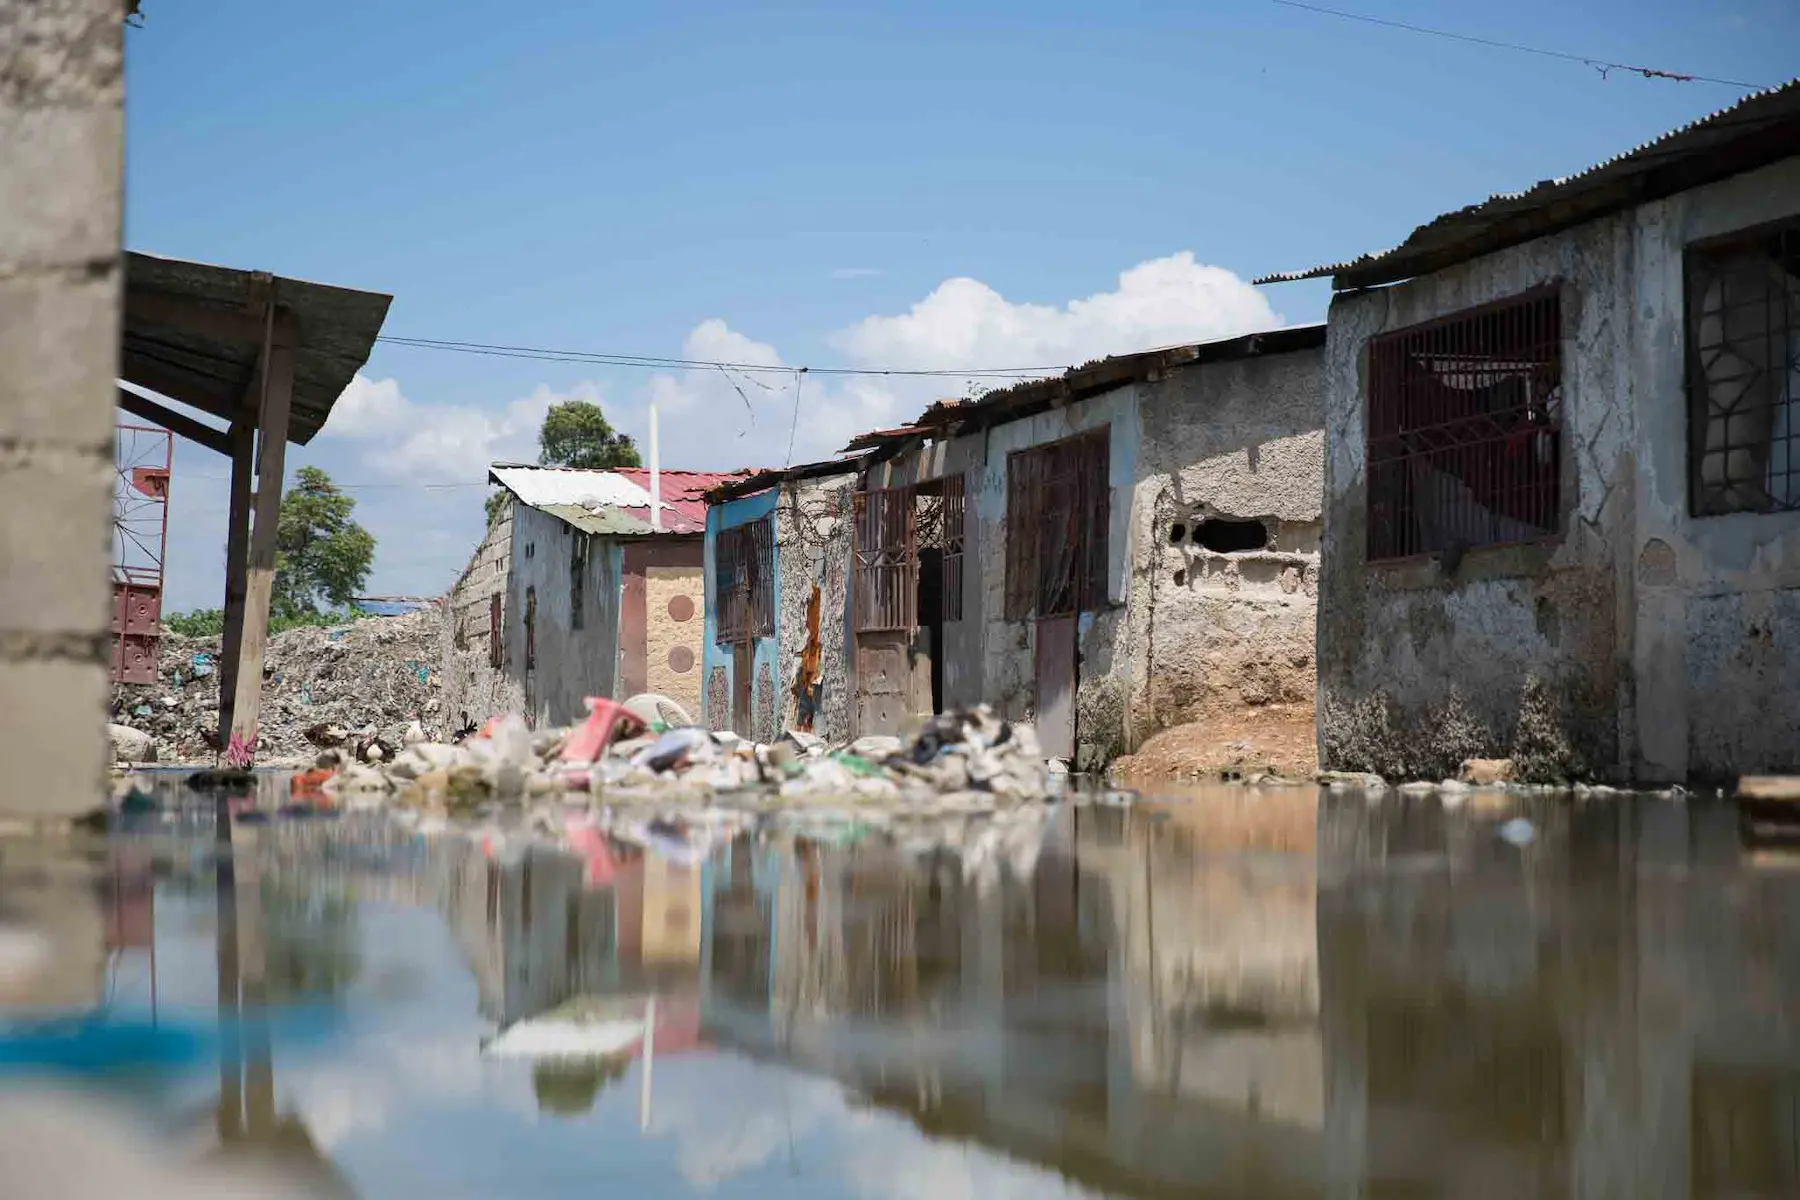 A flooded street in a Haitian urban slum